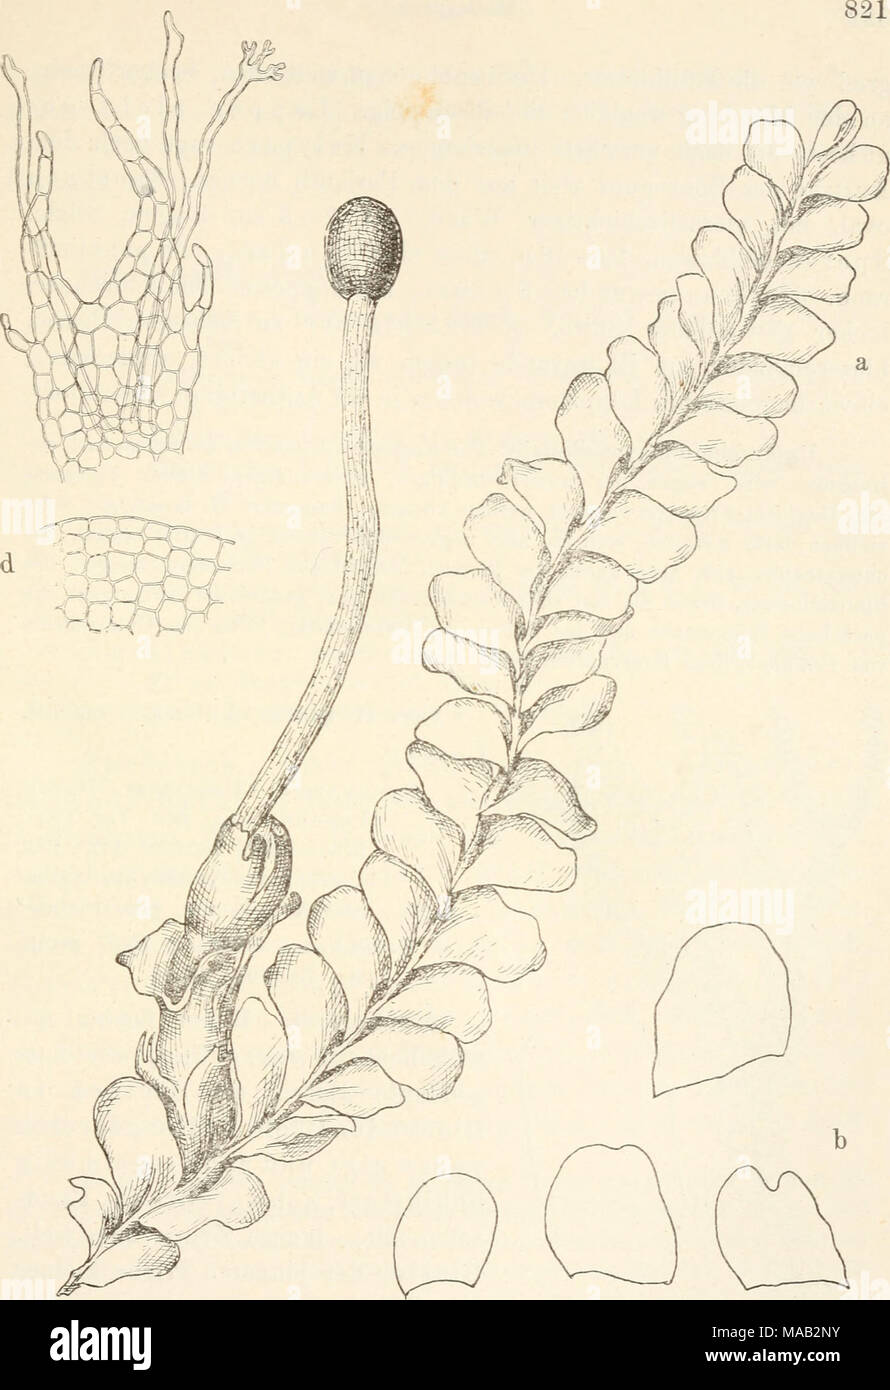 . Dr. L. Rabenhorst's Kryptogamen-Flora von Deutschland, Oesterreich und der Schweiz . Fig. 354. Chiloscyphus polyanthus. a Sporogon tragende Pflanze, Vergr. ^i^; b einzelne Blätter, Vergr. ^/i 5 c Unter- blatt mit Rhizoiden am Grunde, Yergr. ^^°j ; d Zellnetz am Blattrande, Vergr. ^^o y^, (Original von P. Janzen.) Stock Photo